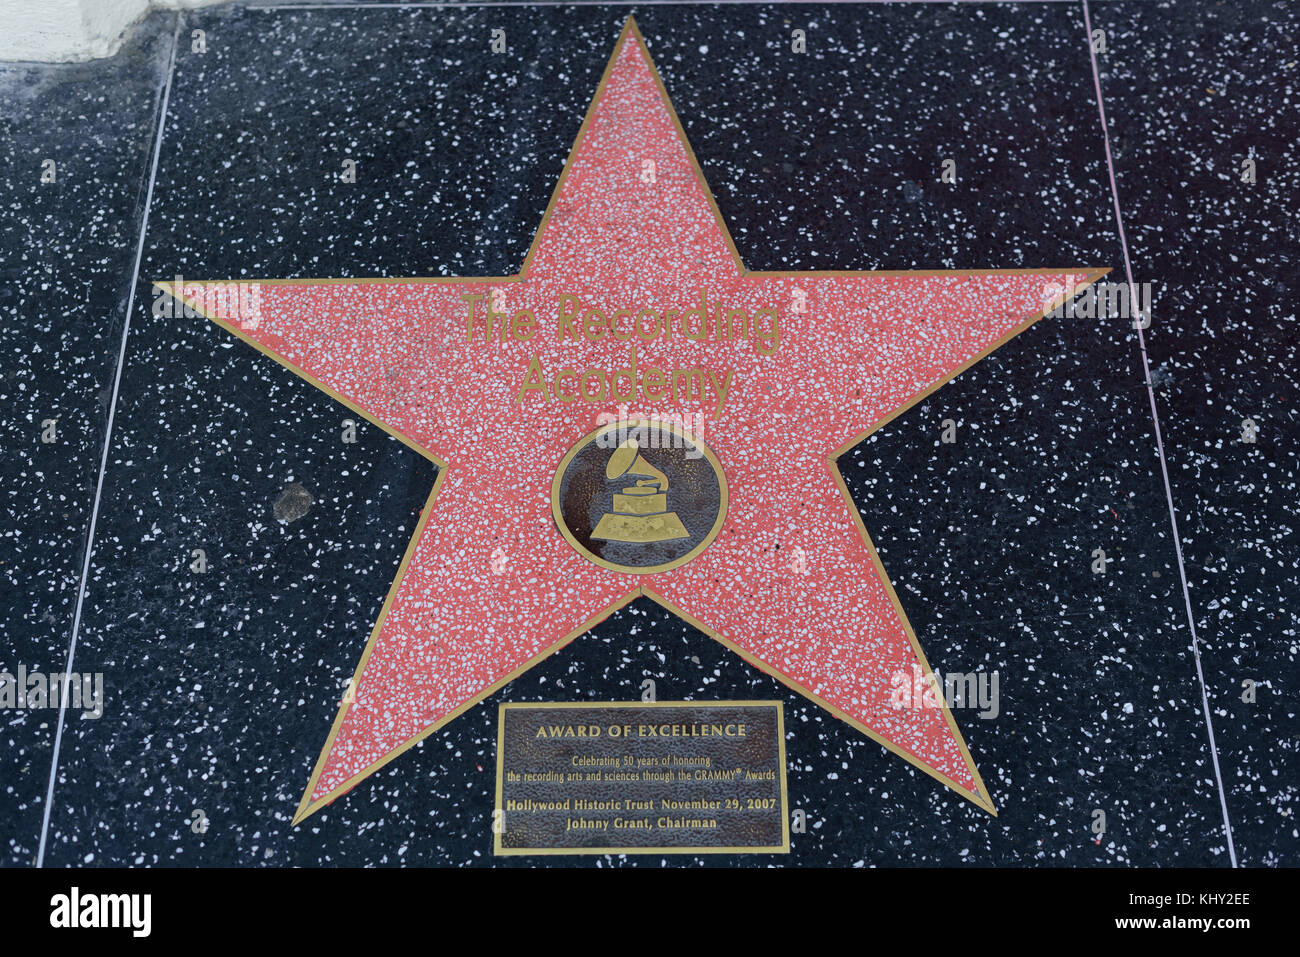 HOLLYWOOD, CA - DICEMBRE 06: La star della Recording Academy sulla Hollywood Walk of Fame di Hollywood, California, il 6 dicembre 2016. Foto Stock